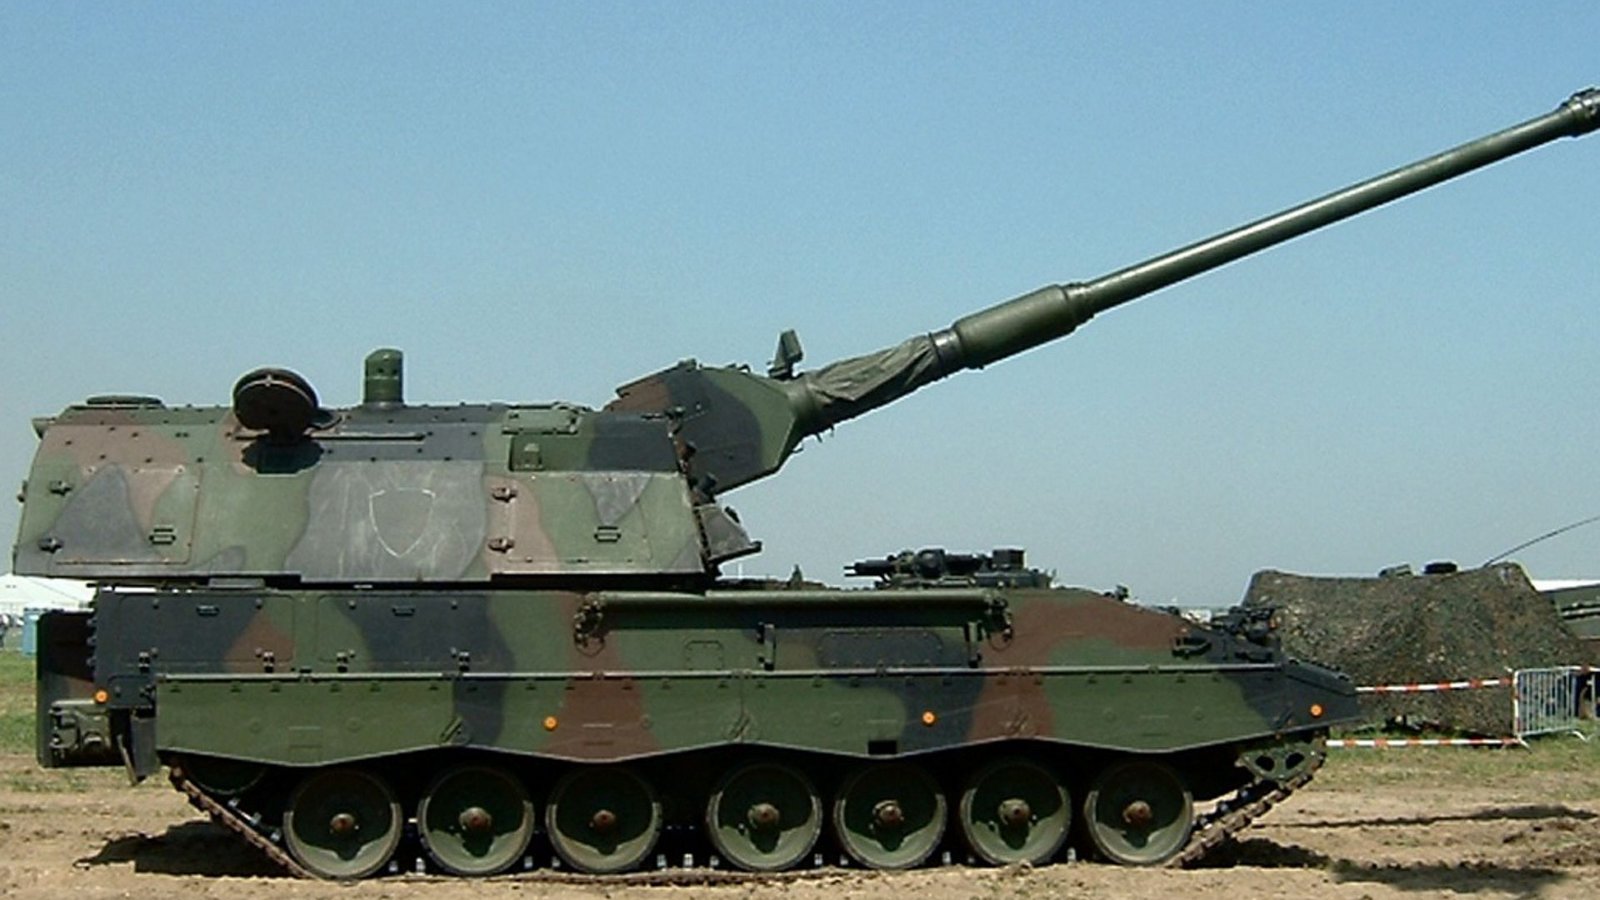 Deutschland: Die Panzerhaubitze 2000 (PzH 2000) ist ein selbstfahrendes gepanzertes Artilleriegeschütz, das von den deutschen Unternehmen Krauss-Maffei Wegmann und Rheinmetall produziert wird. Sie ist das Standardgeschütz der Artilleriebataillone der Bundeswehr und ersetzte dort die Panzerhaubitze M109.Foto: Wikipedia commons/Quistnix/CC BY 2.0